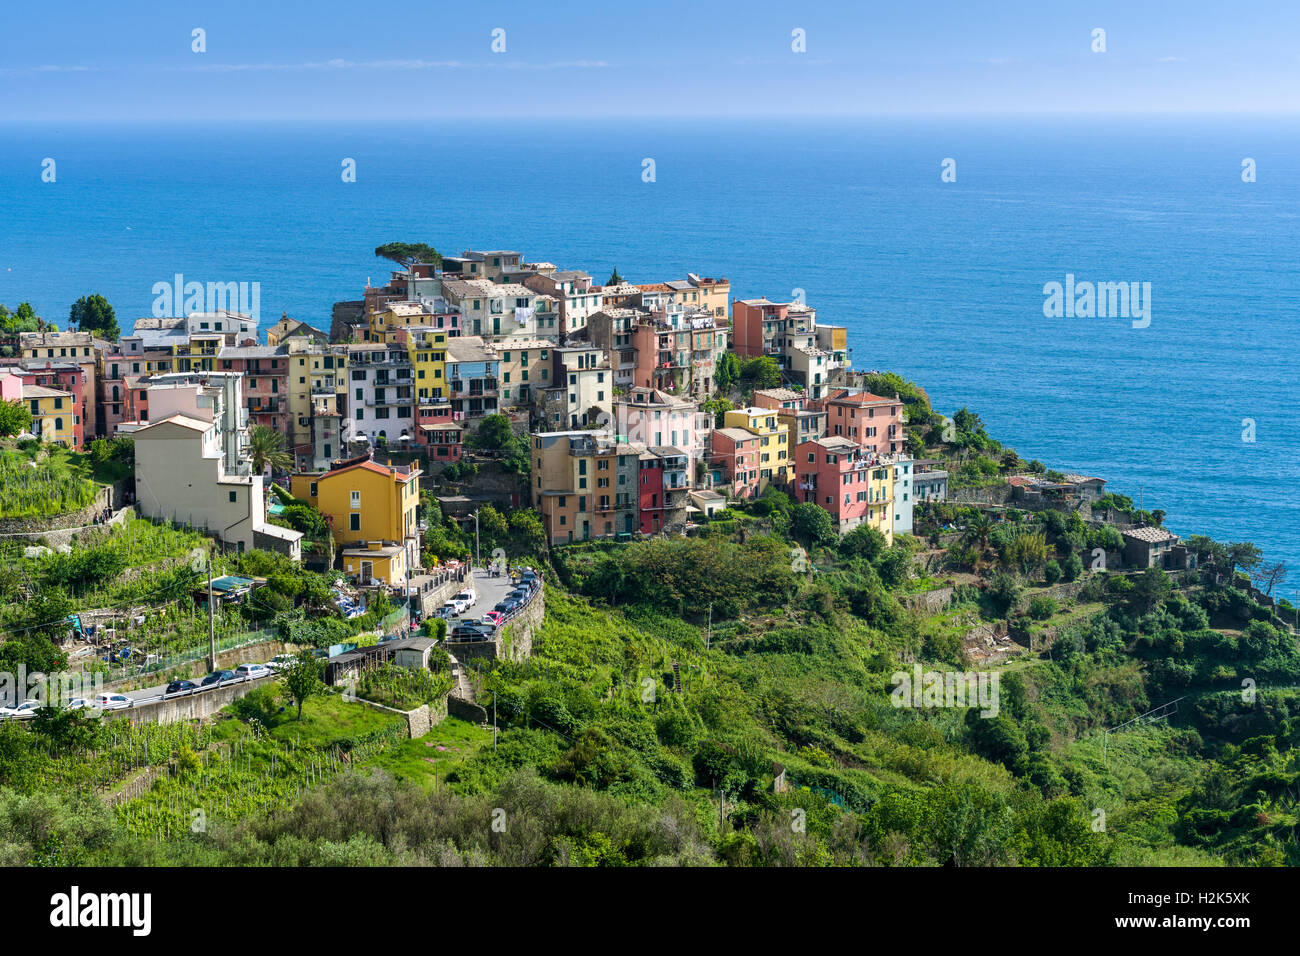 Case colorate di Manarola città stipati su una collina sulla costa del Mare Mediterraneo, Riomaggiore, Liguria, Italia Foto Stock